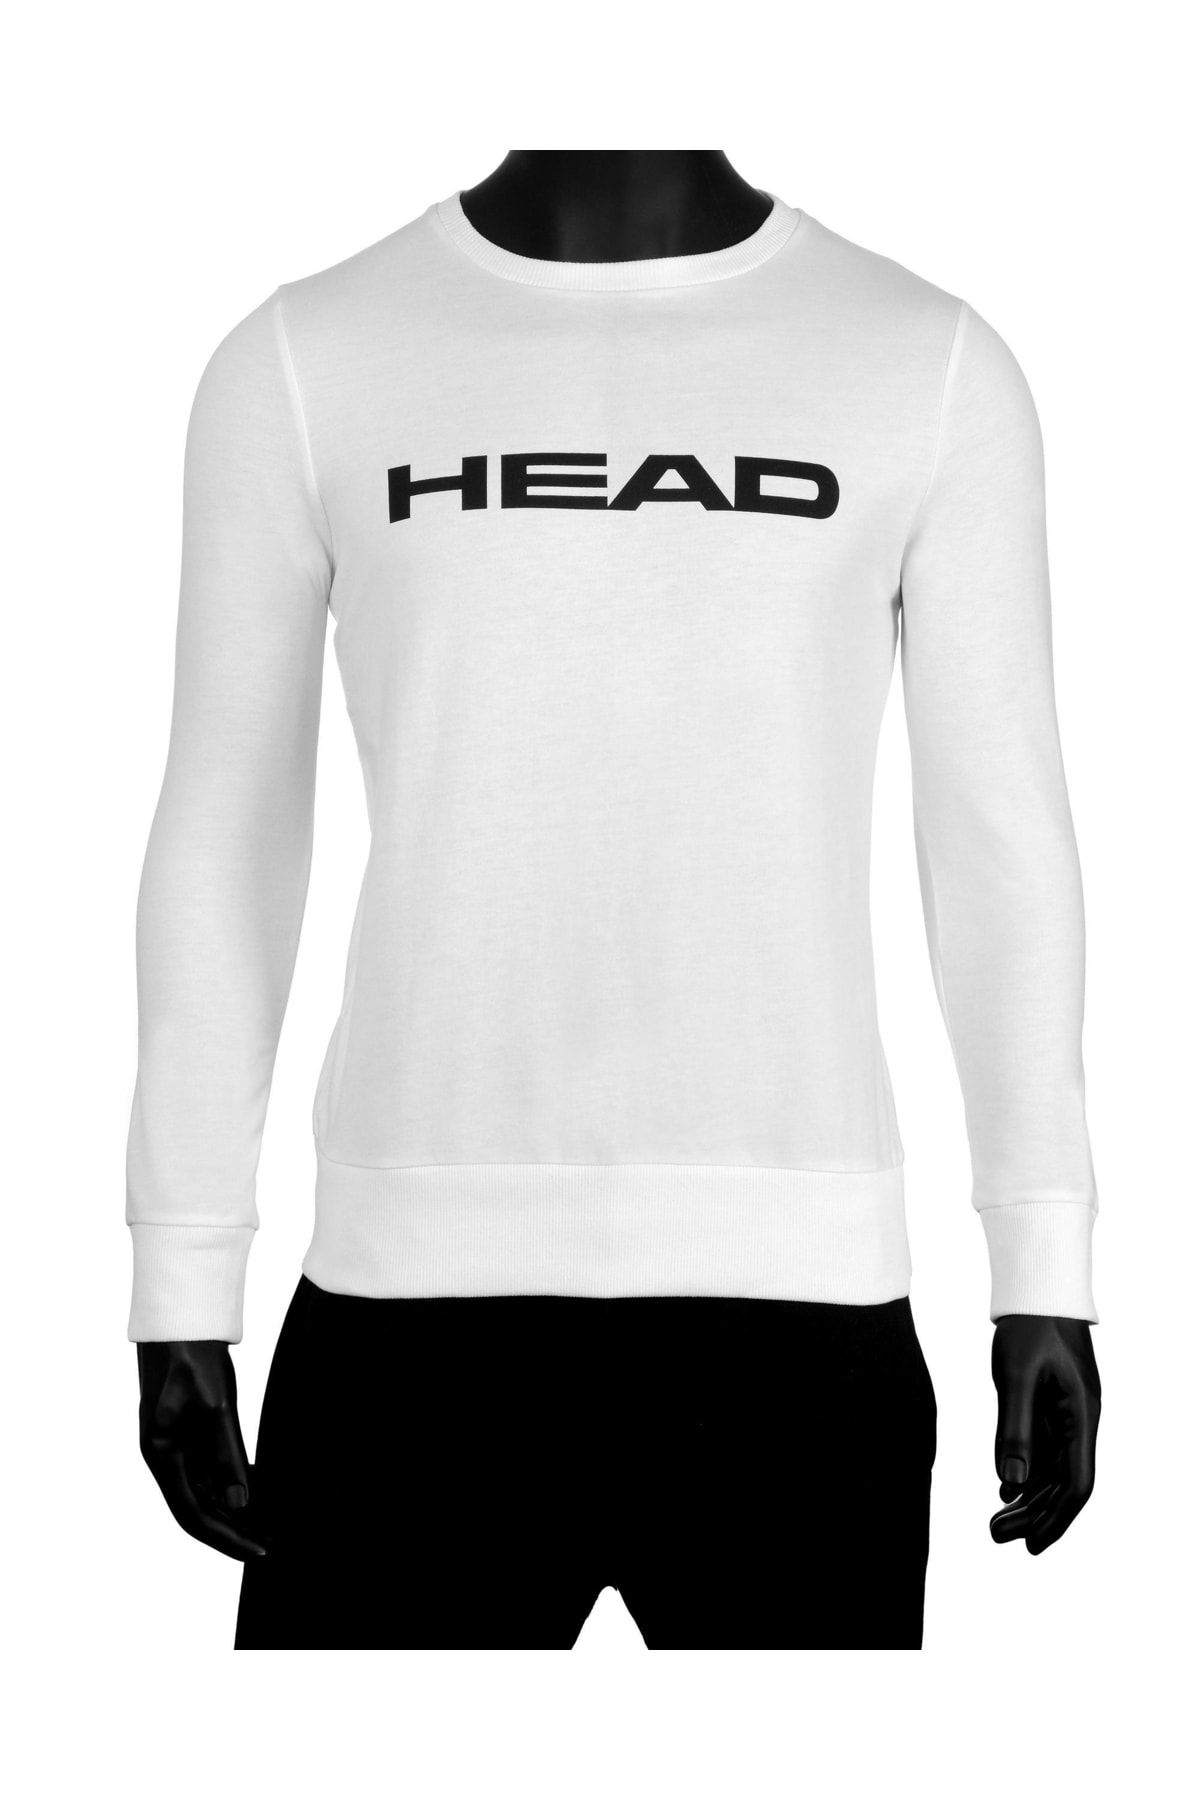 Head Erkek Beyaz Logo Baskılı Mevsimlik Pamuklu Bisiklet Yaka Sporcu Basic Tenis Sweatshirt